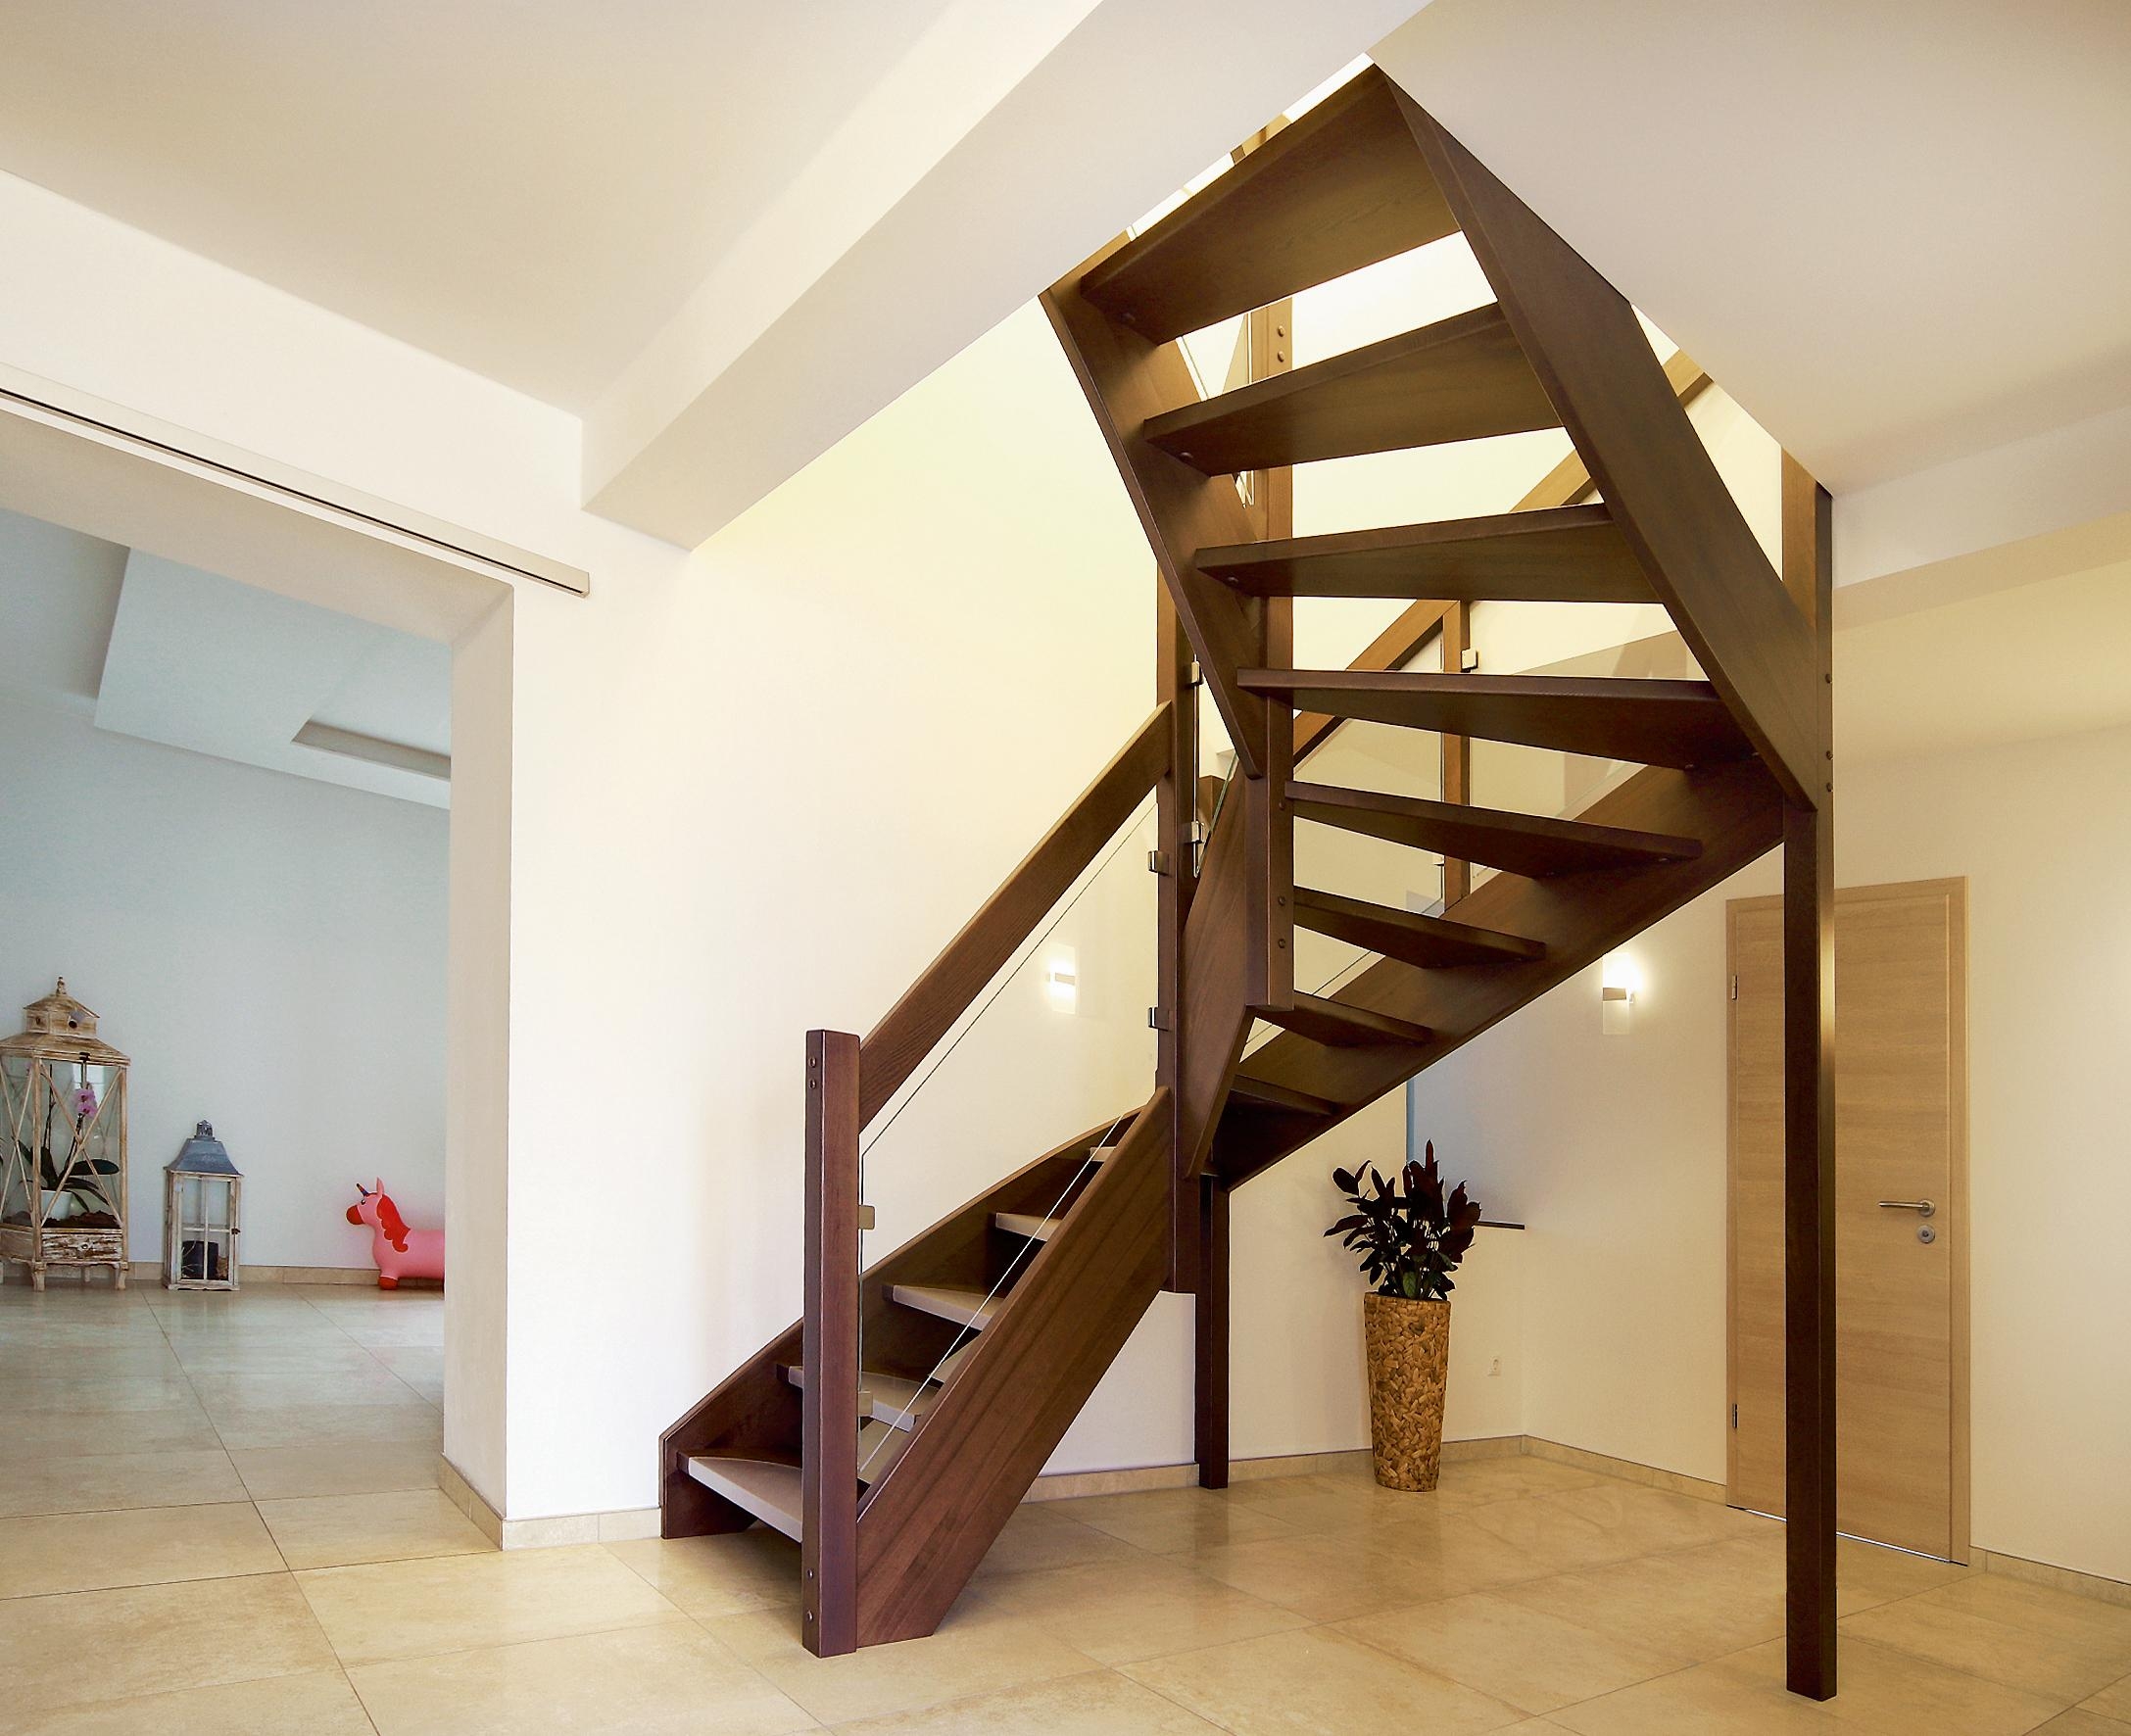 Astrein! – Wangentreppe aus gebeizter Esche setzt gekonnt Akzente
#Wangentreppe #modern #Treppe